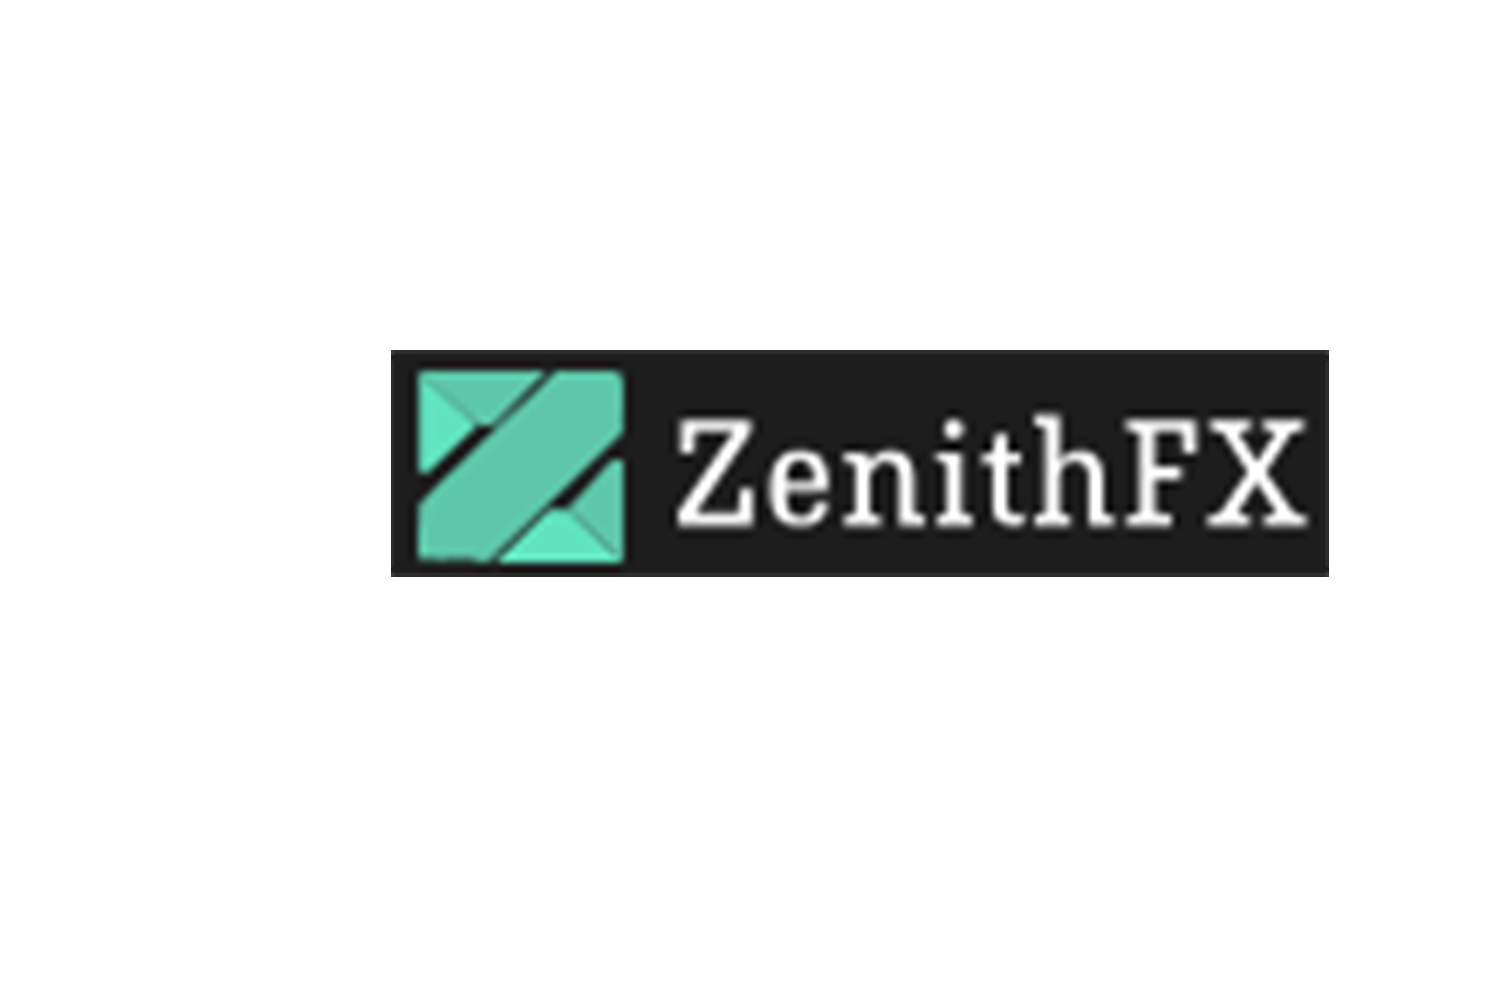 Отзывы о ZenithFX: надежный проект или обман?